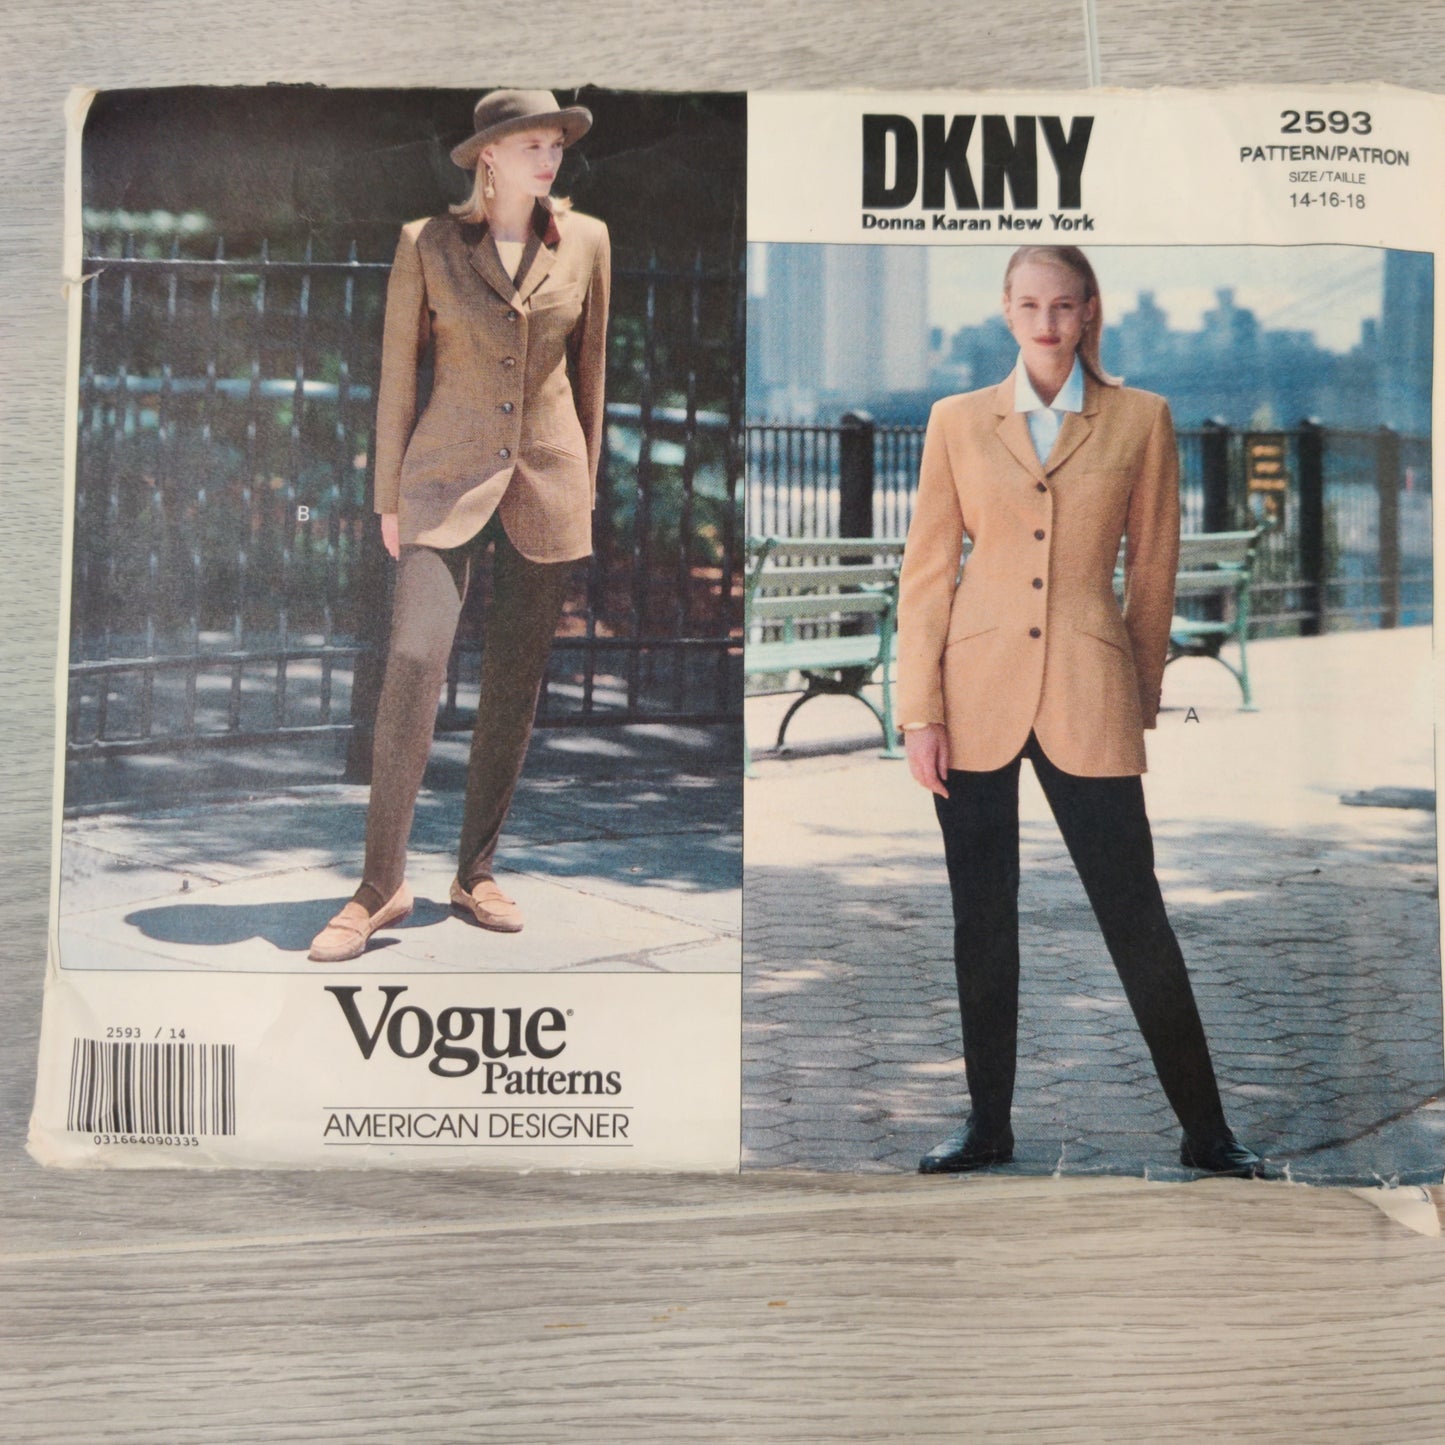 Vogue 2593 Size 14-16-18 DKNY